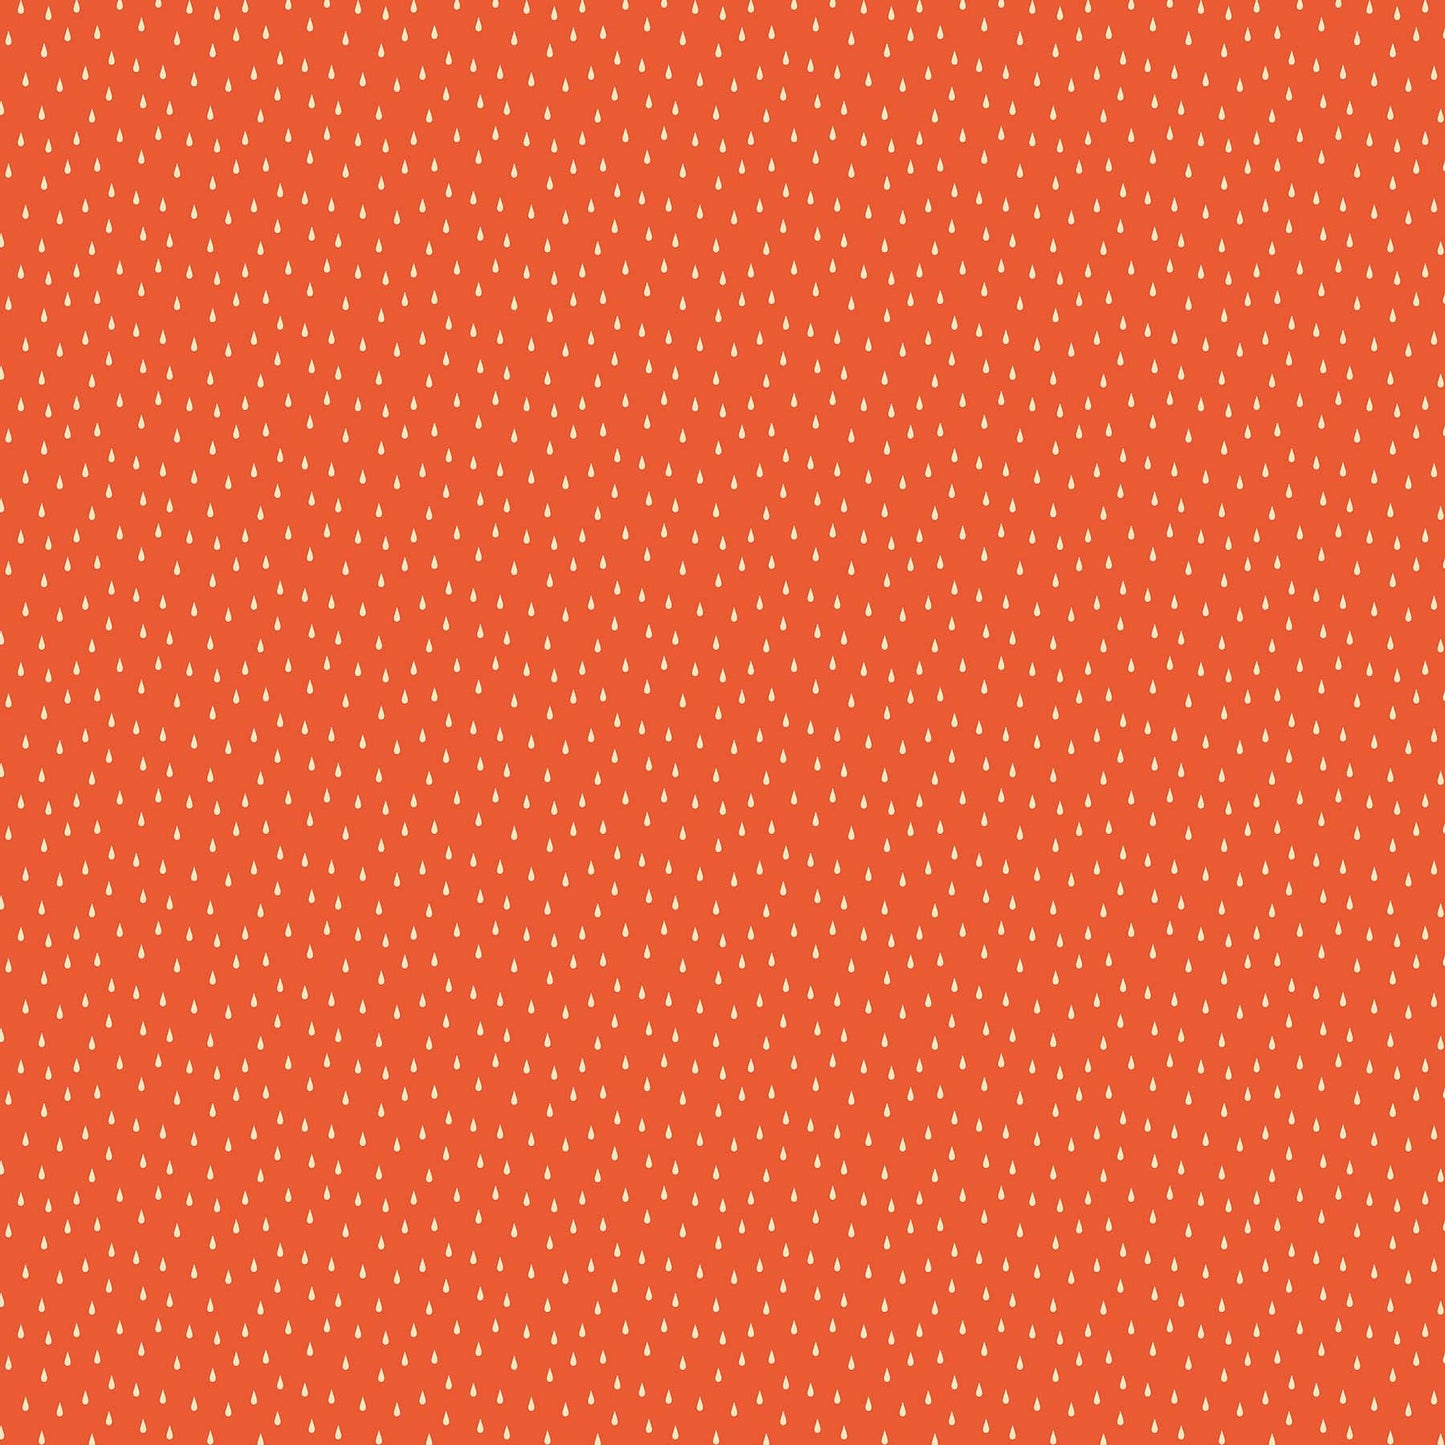 Figo Fabric Simple Pleasures - Drops on Orange by Naomi Wilkinson